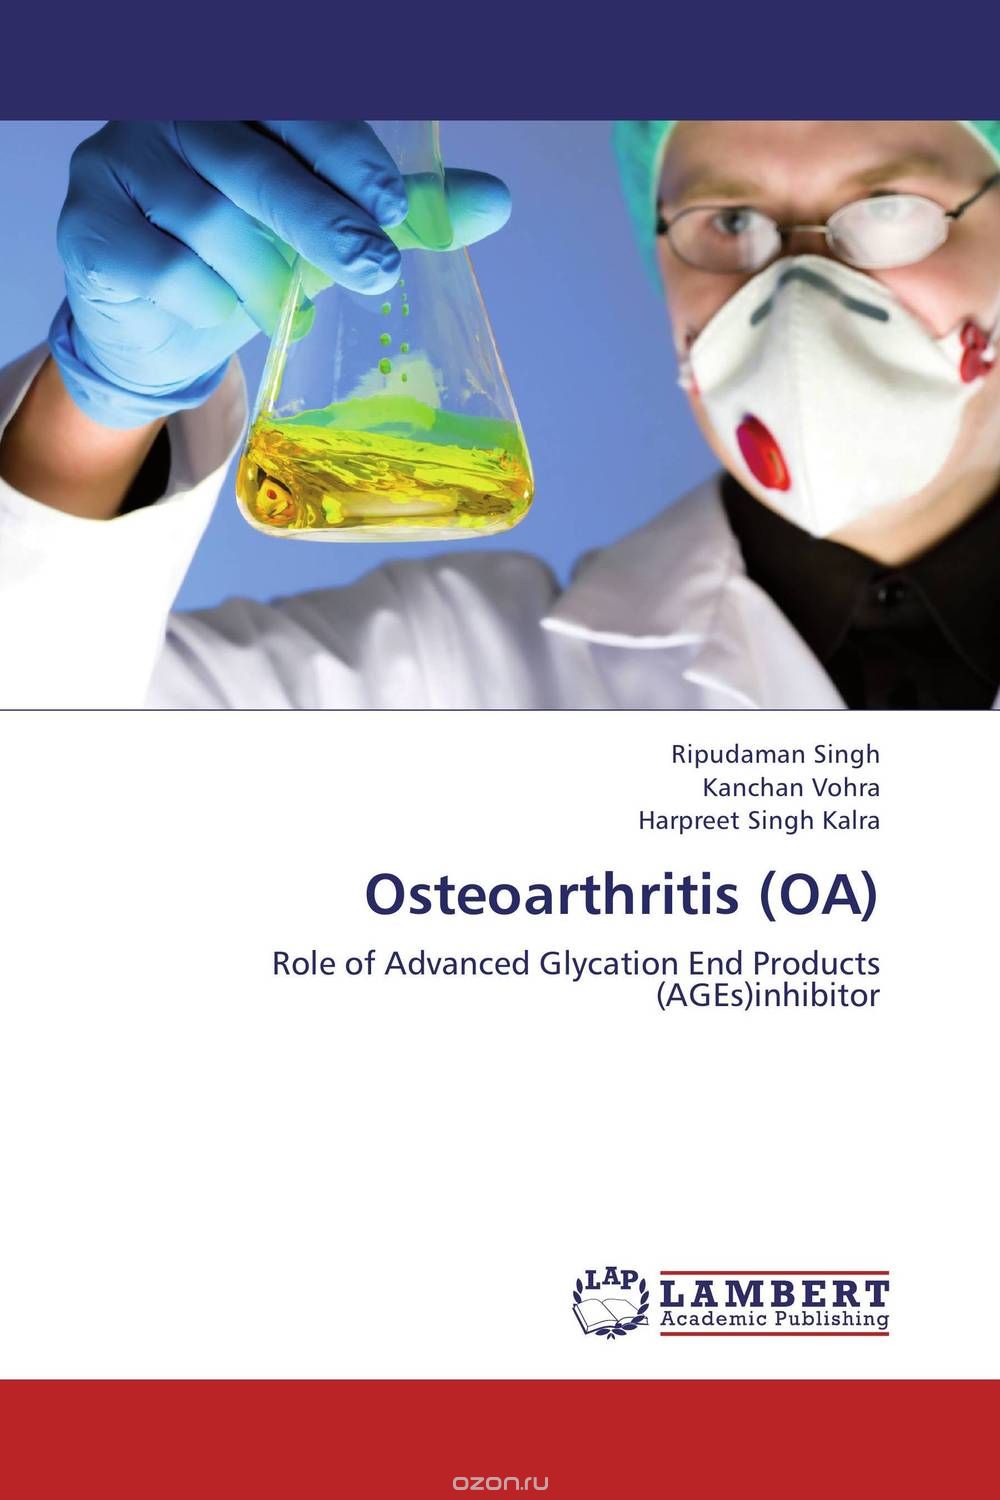 Скачать книгу "Osteoarthritis (OA)"